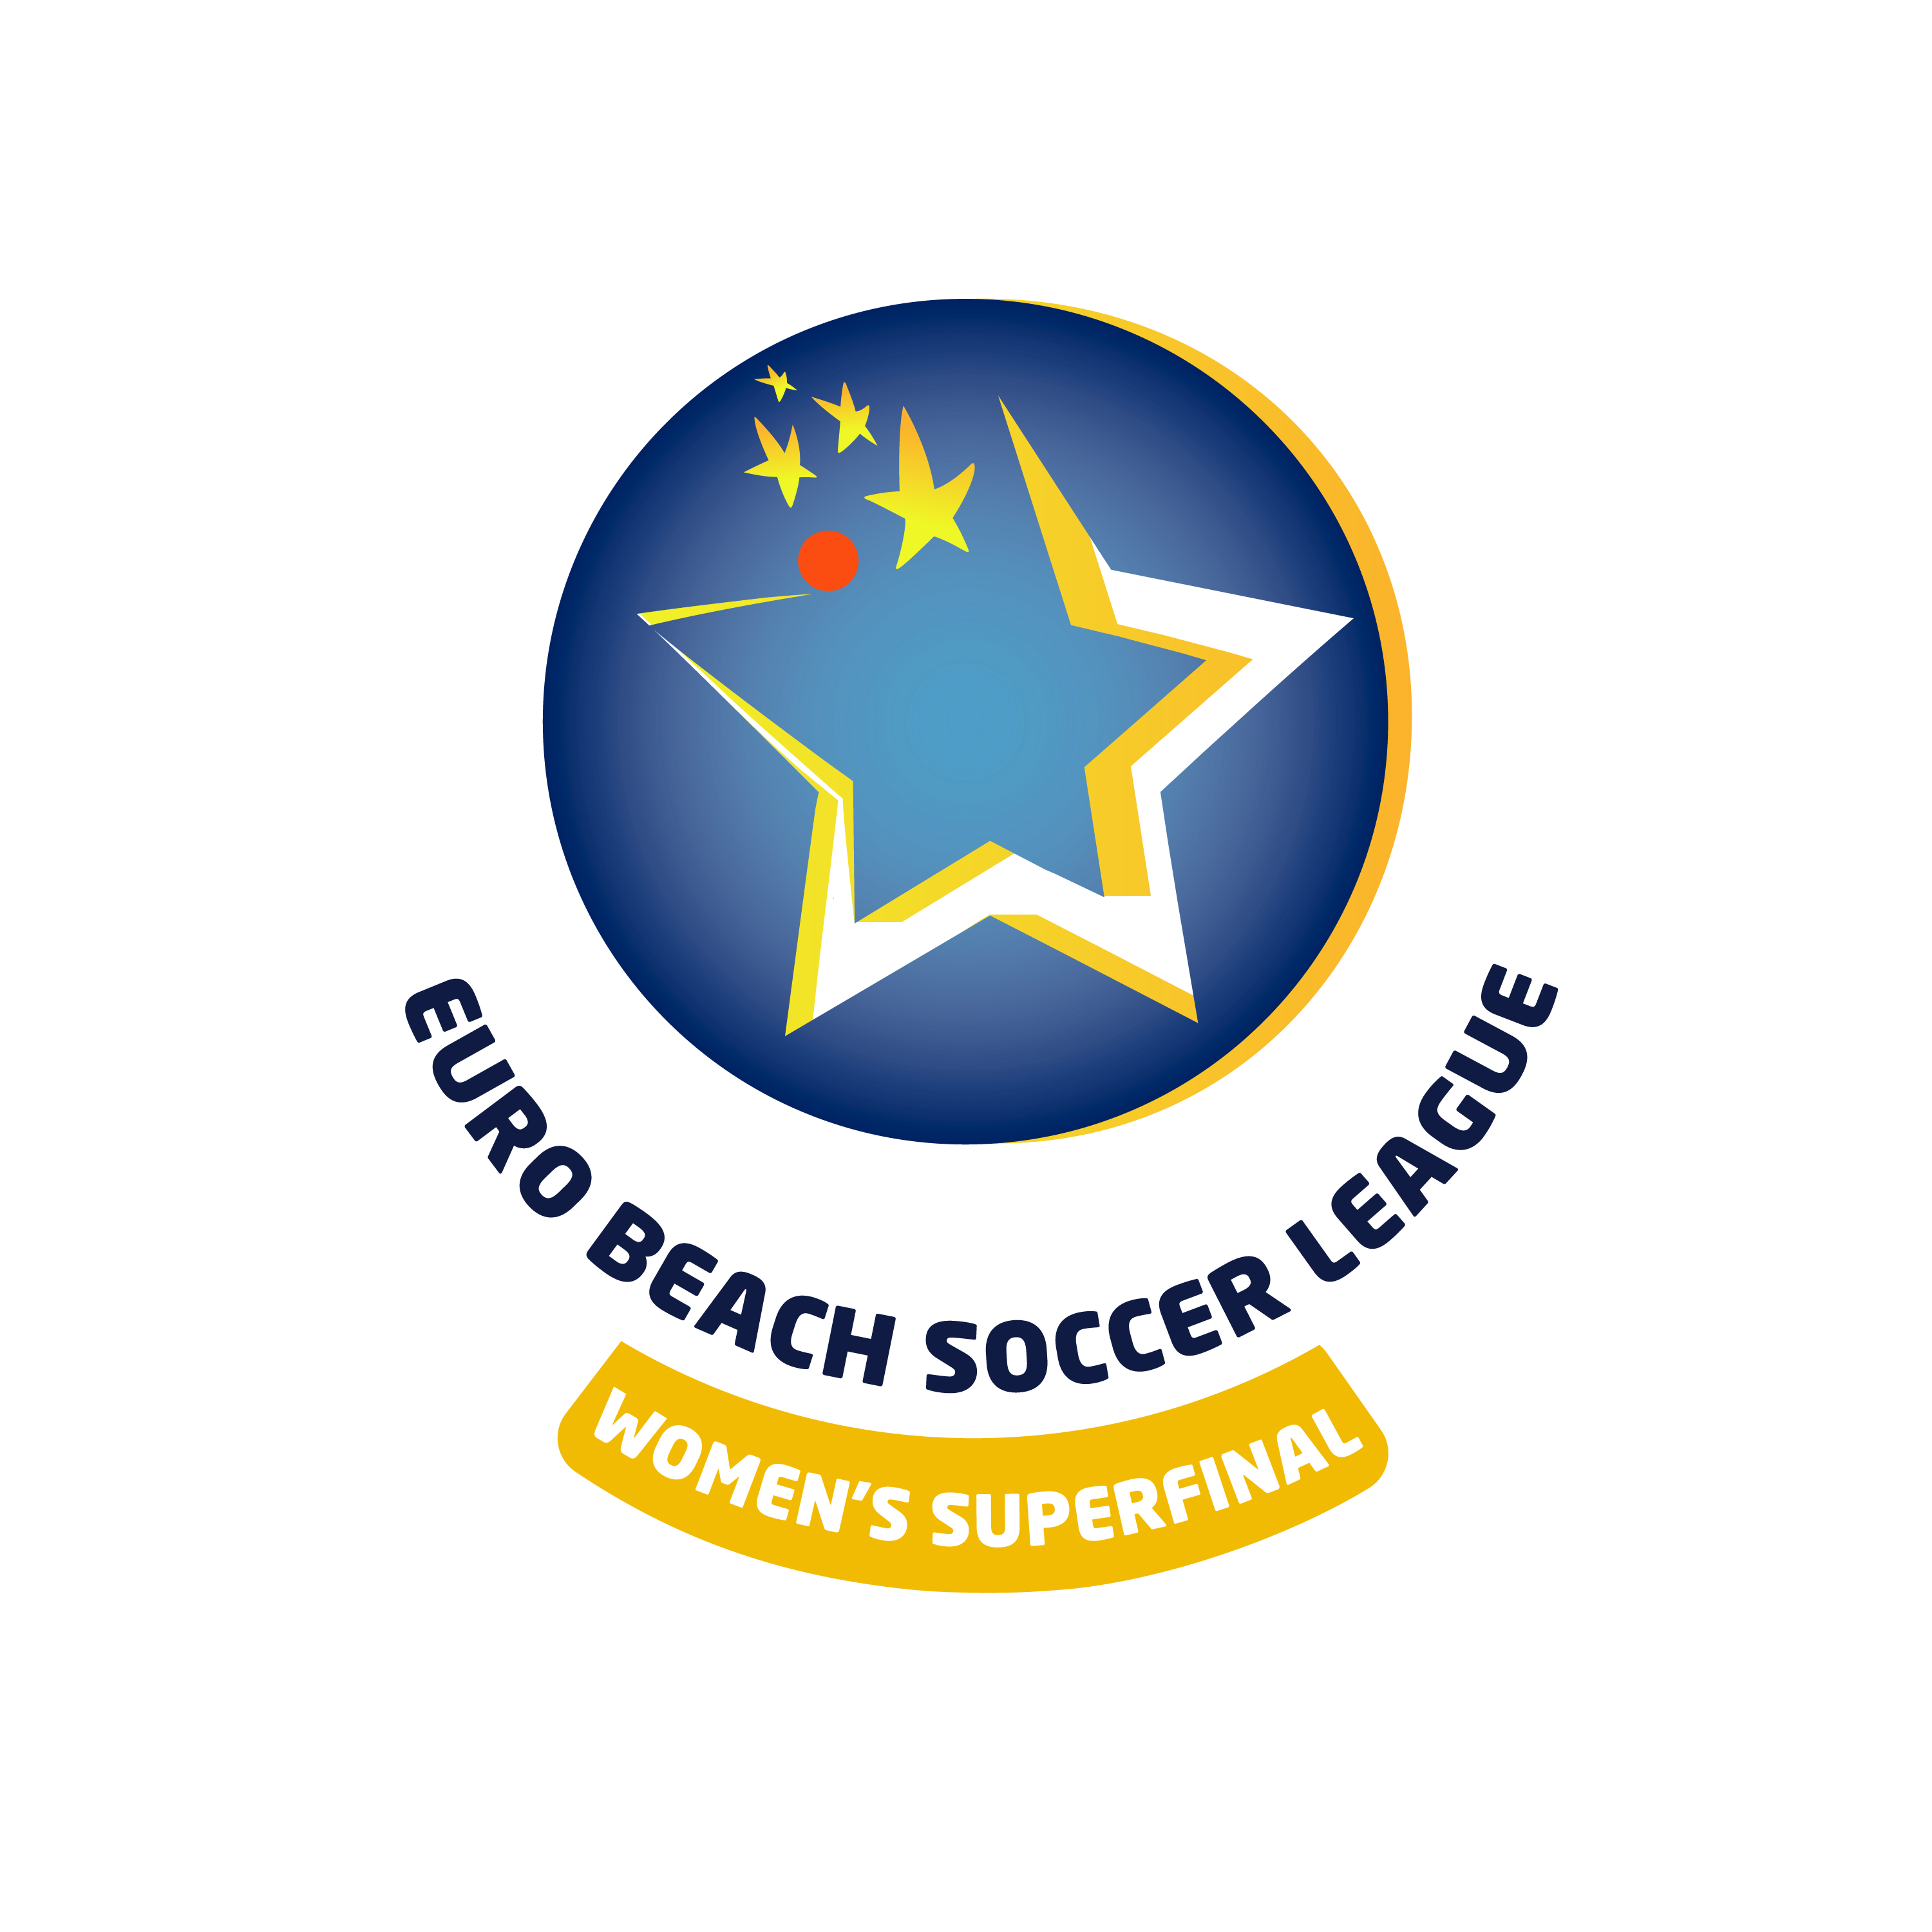 Euro Beach Soccer League 2021 – Superfinal